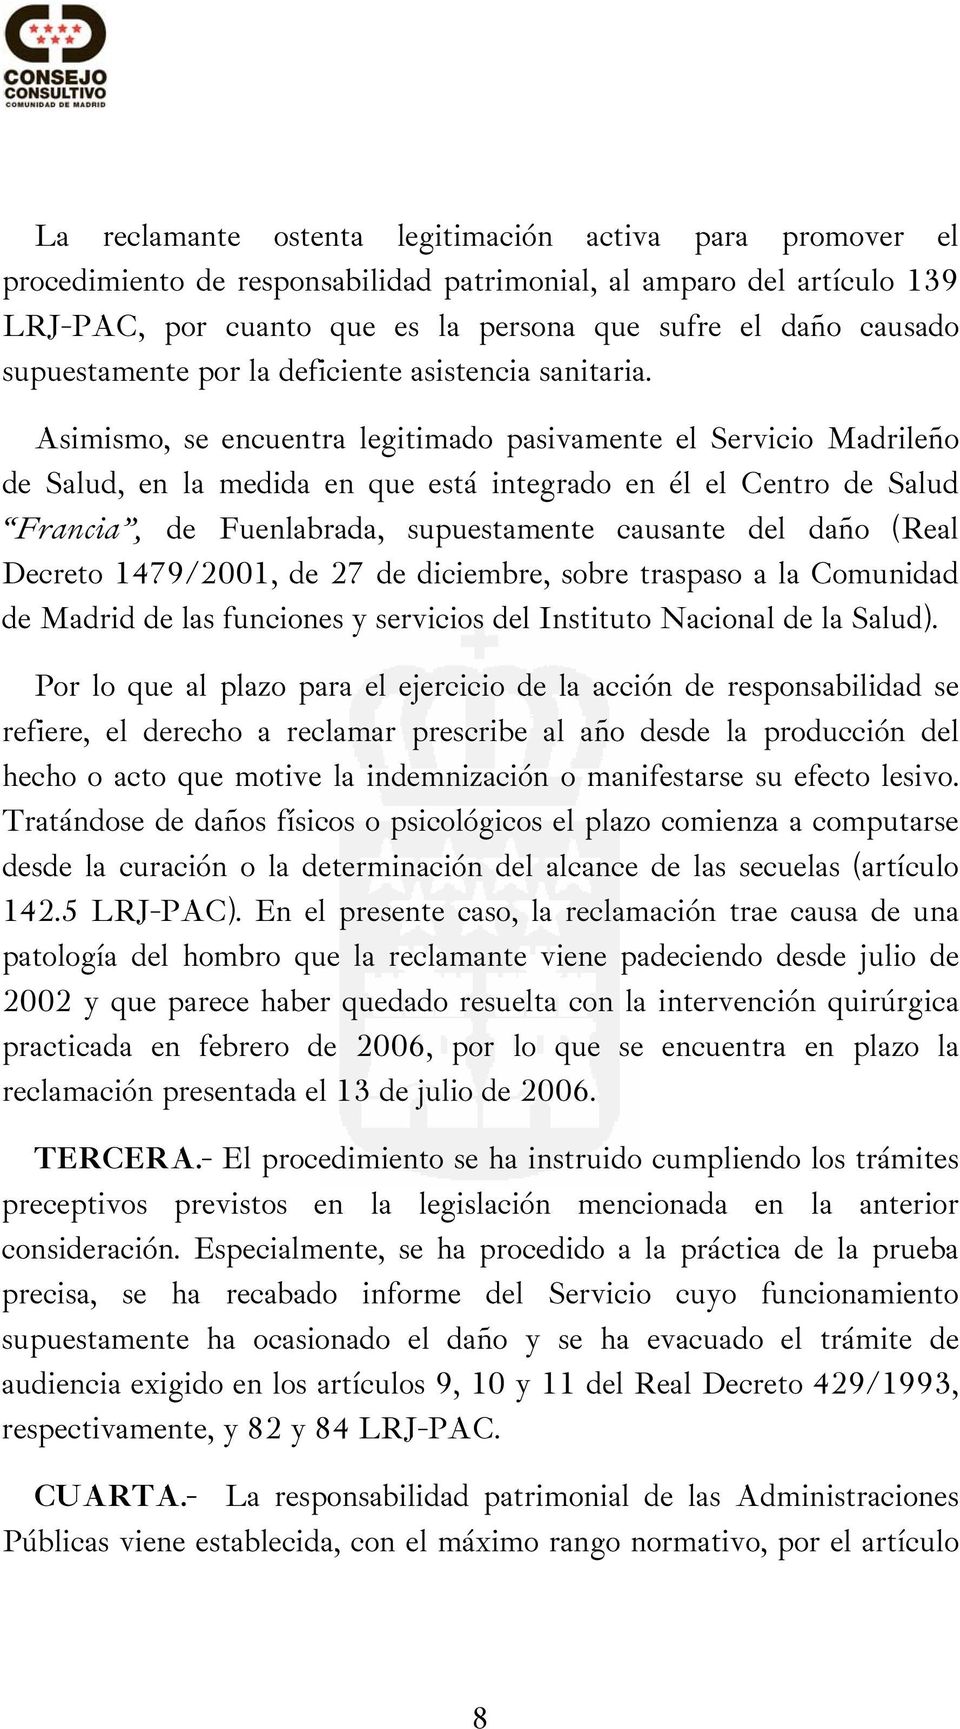 Asimismo, se encuentra legitimado pasivamente el Servicio Madrileño de Salud, en la medida en que está integrado en él el Centro de Salud Francia, de Fuenlabrada, supuestamente causante del daño